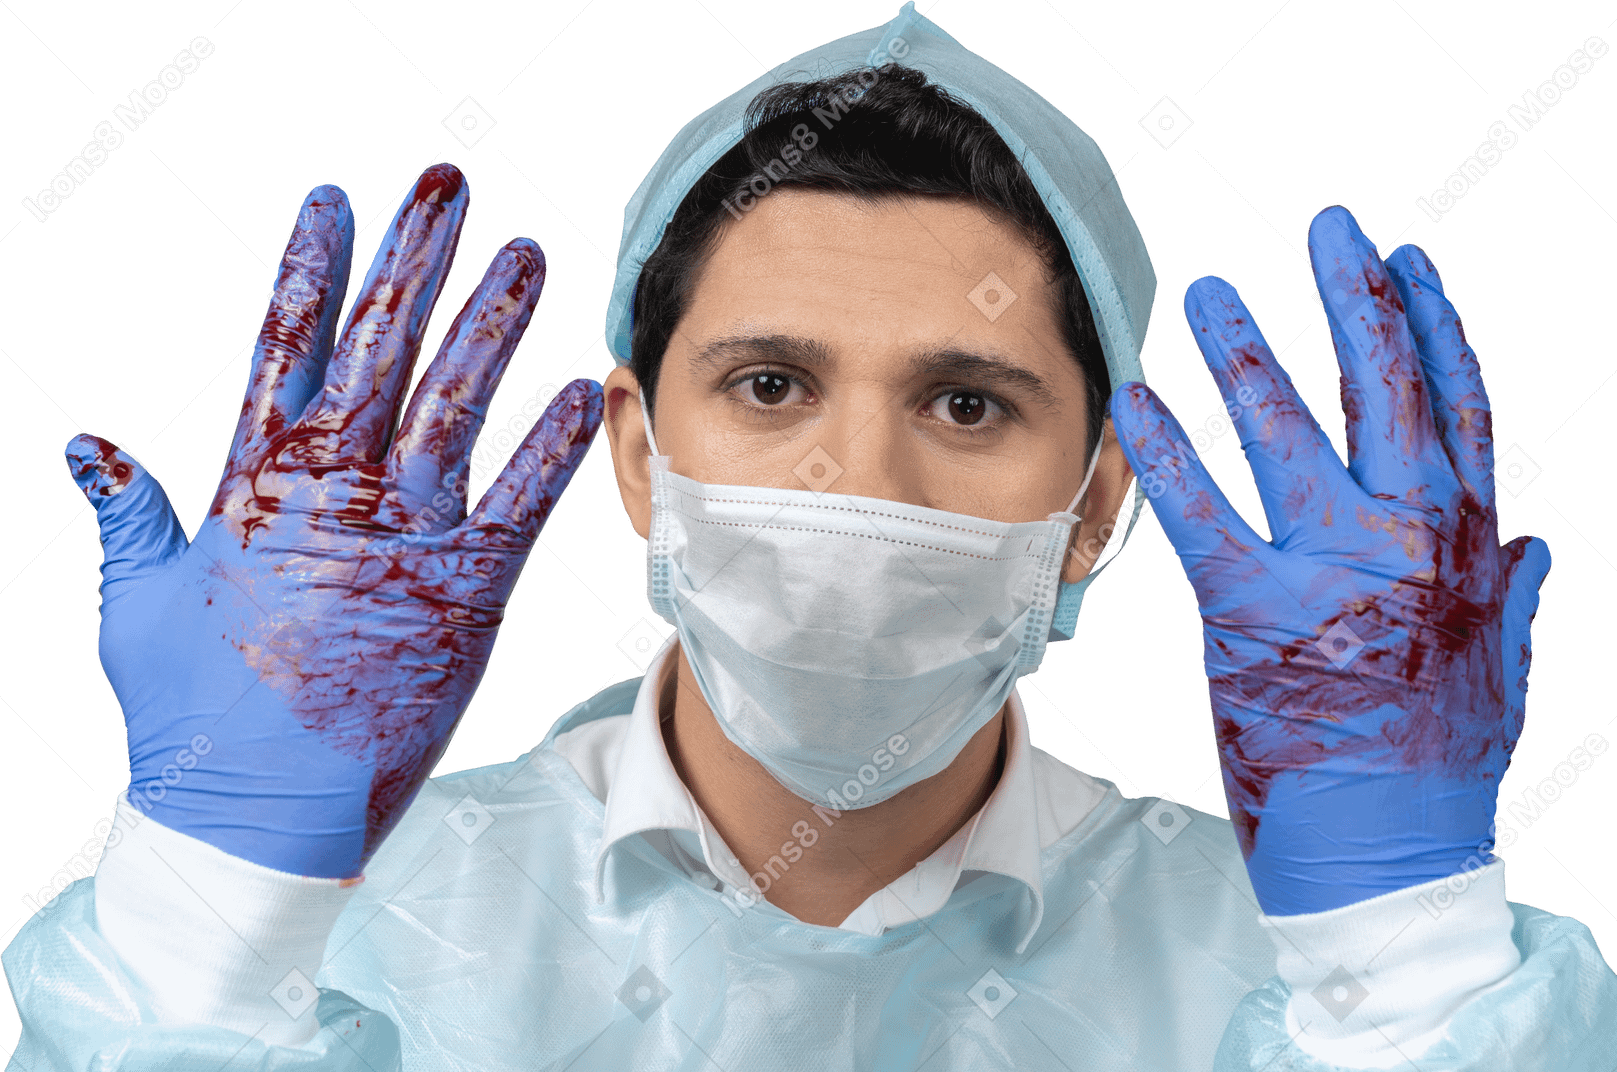 Arzt mit blutüberströmten handschuhen